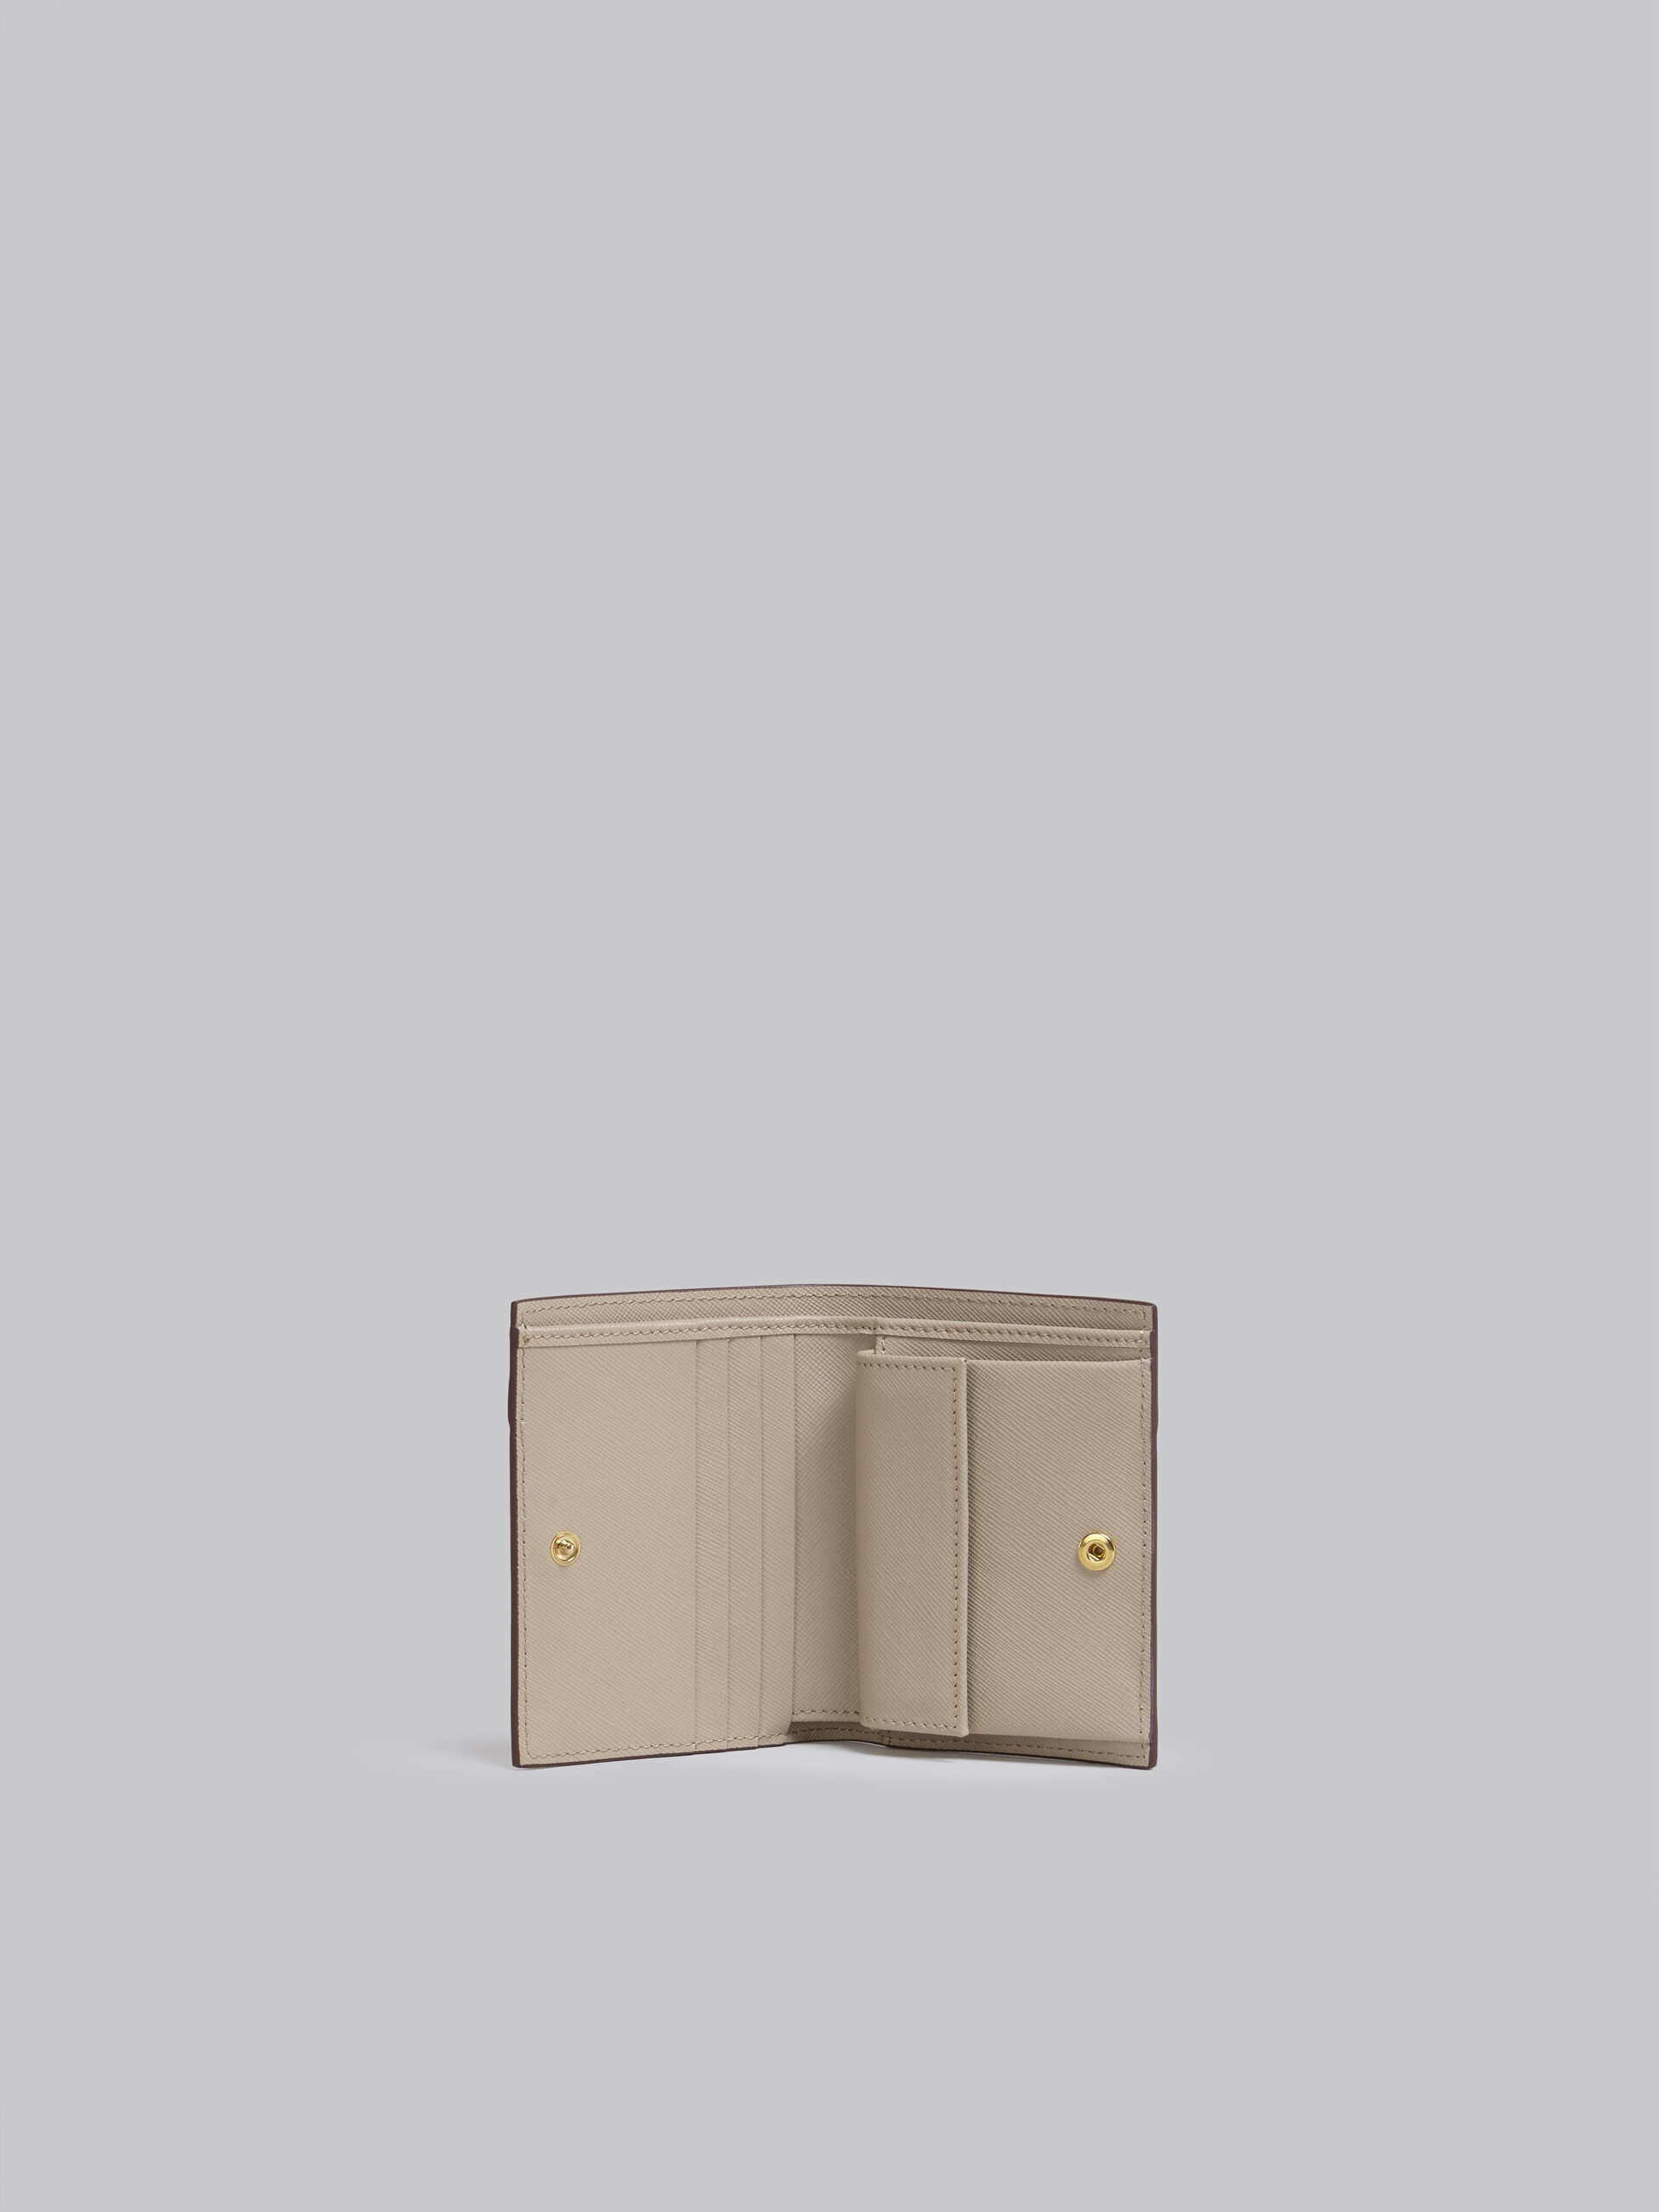 Portafoglio bi-fold in vitello saffiano beige - Portafogli - Image 2